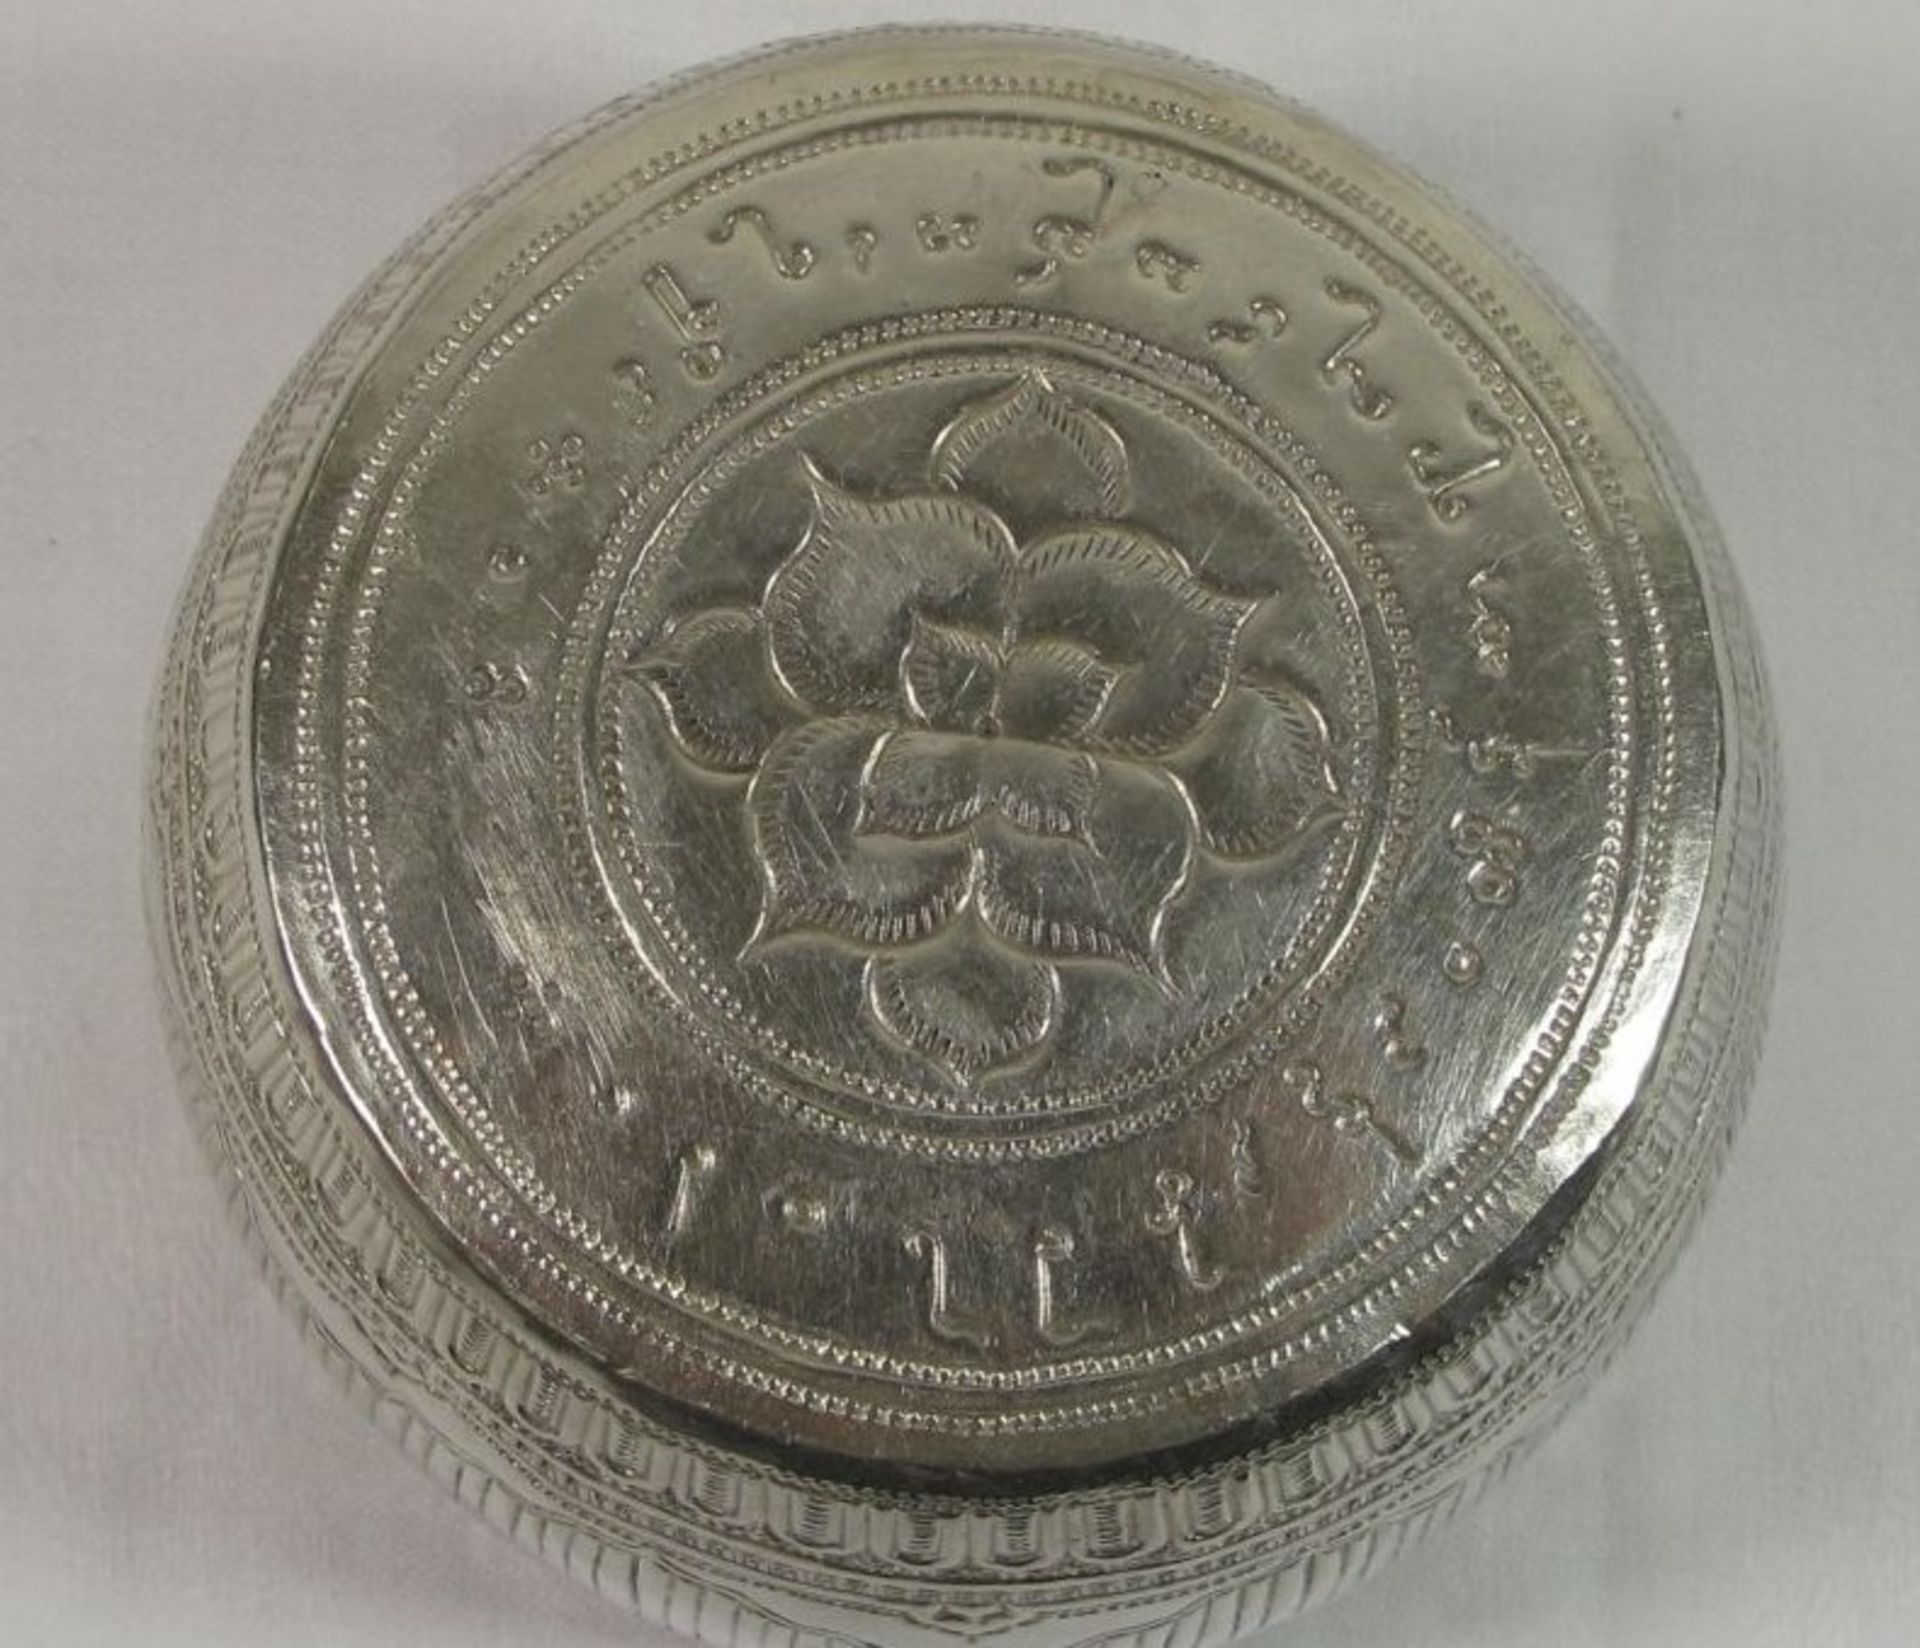 Schale, orientalisch, wohl um 1900, Silber geprüft, 164,8g, H-7,5cm D-10,5cm. - Bild 3 aus 3